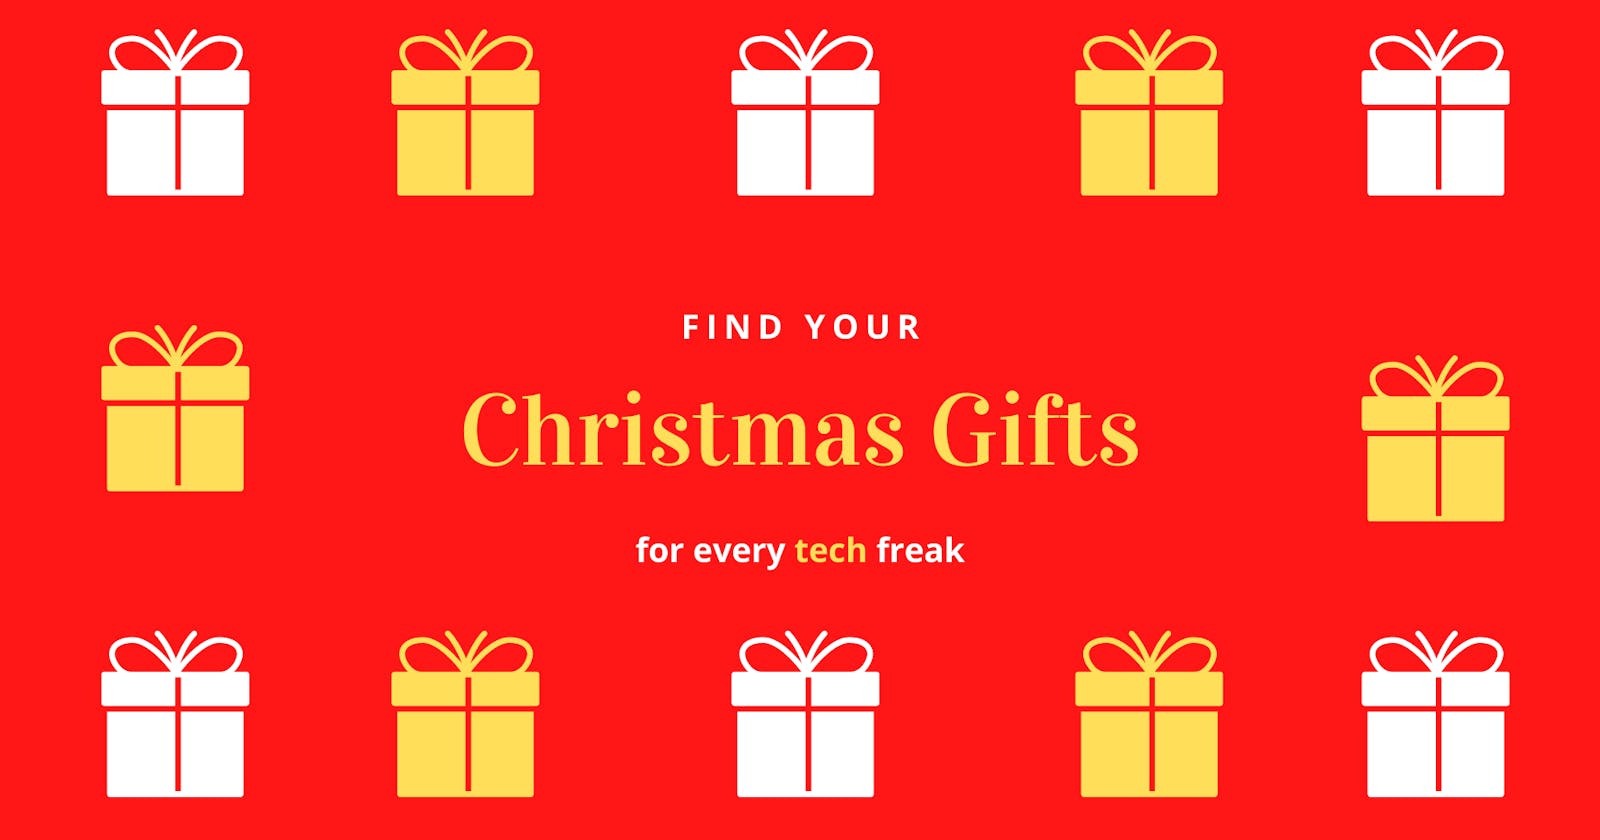 Gift ideas for Tech freaks